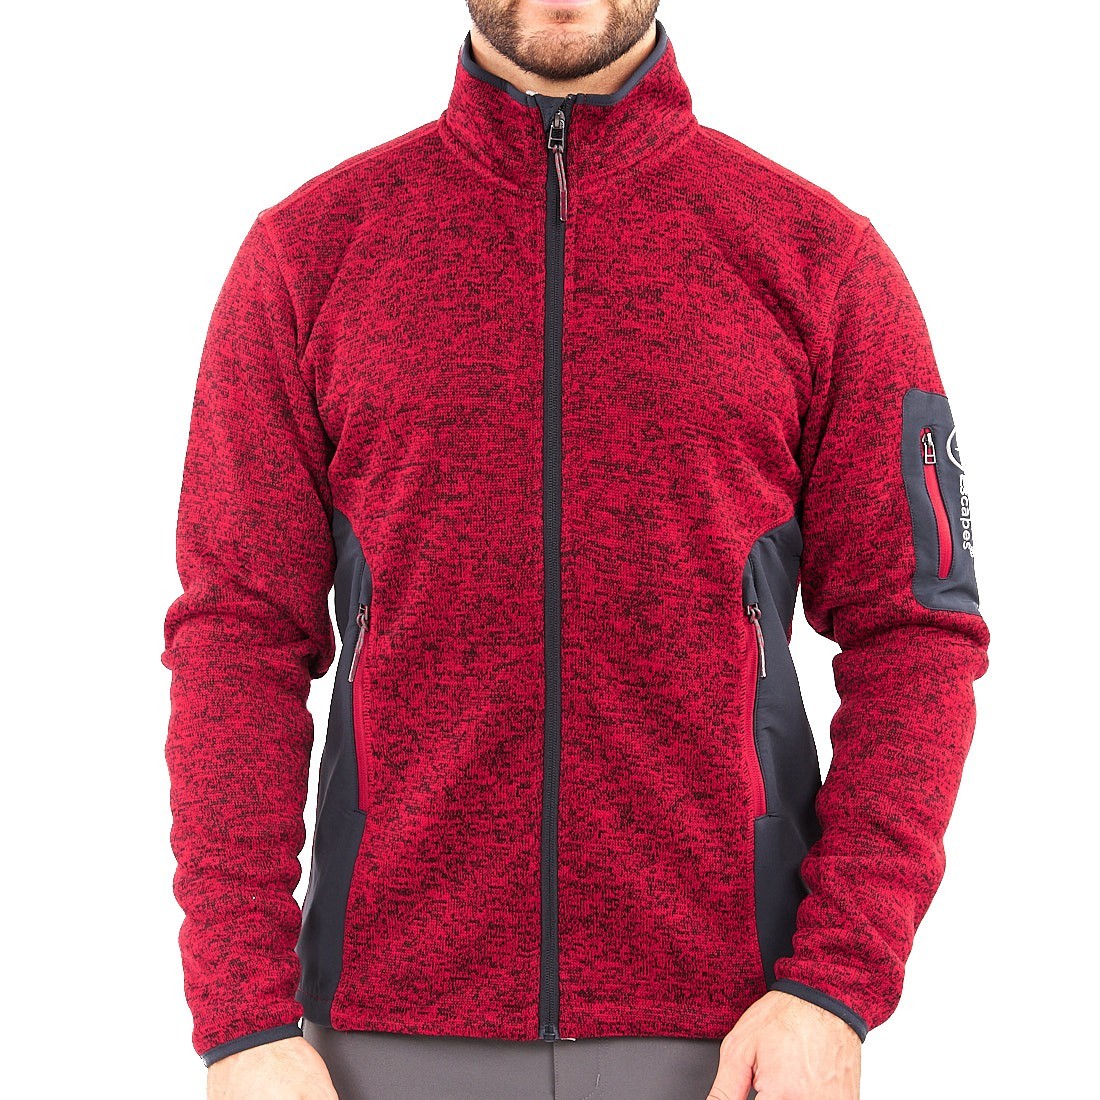 ONTAKE - Man long zip fleece jacket